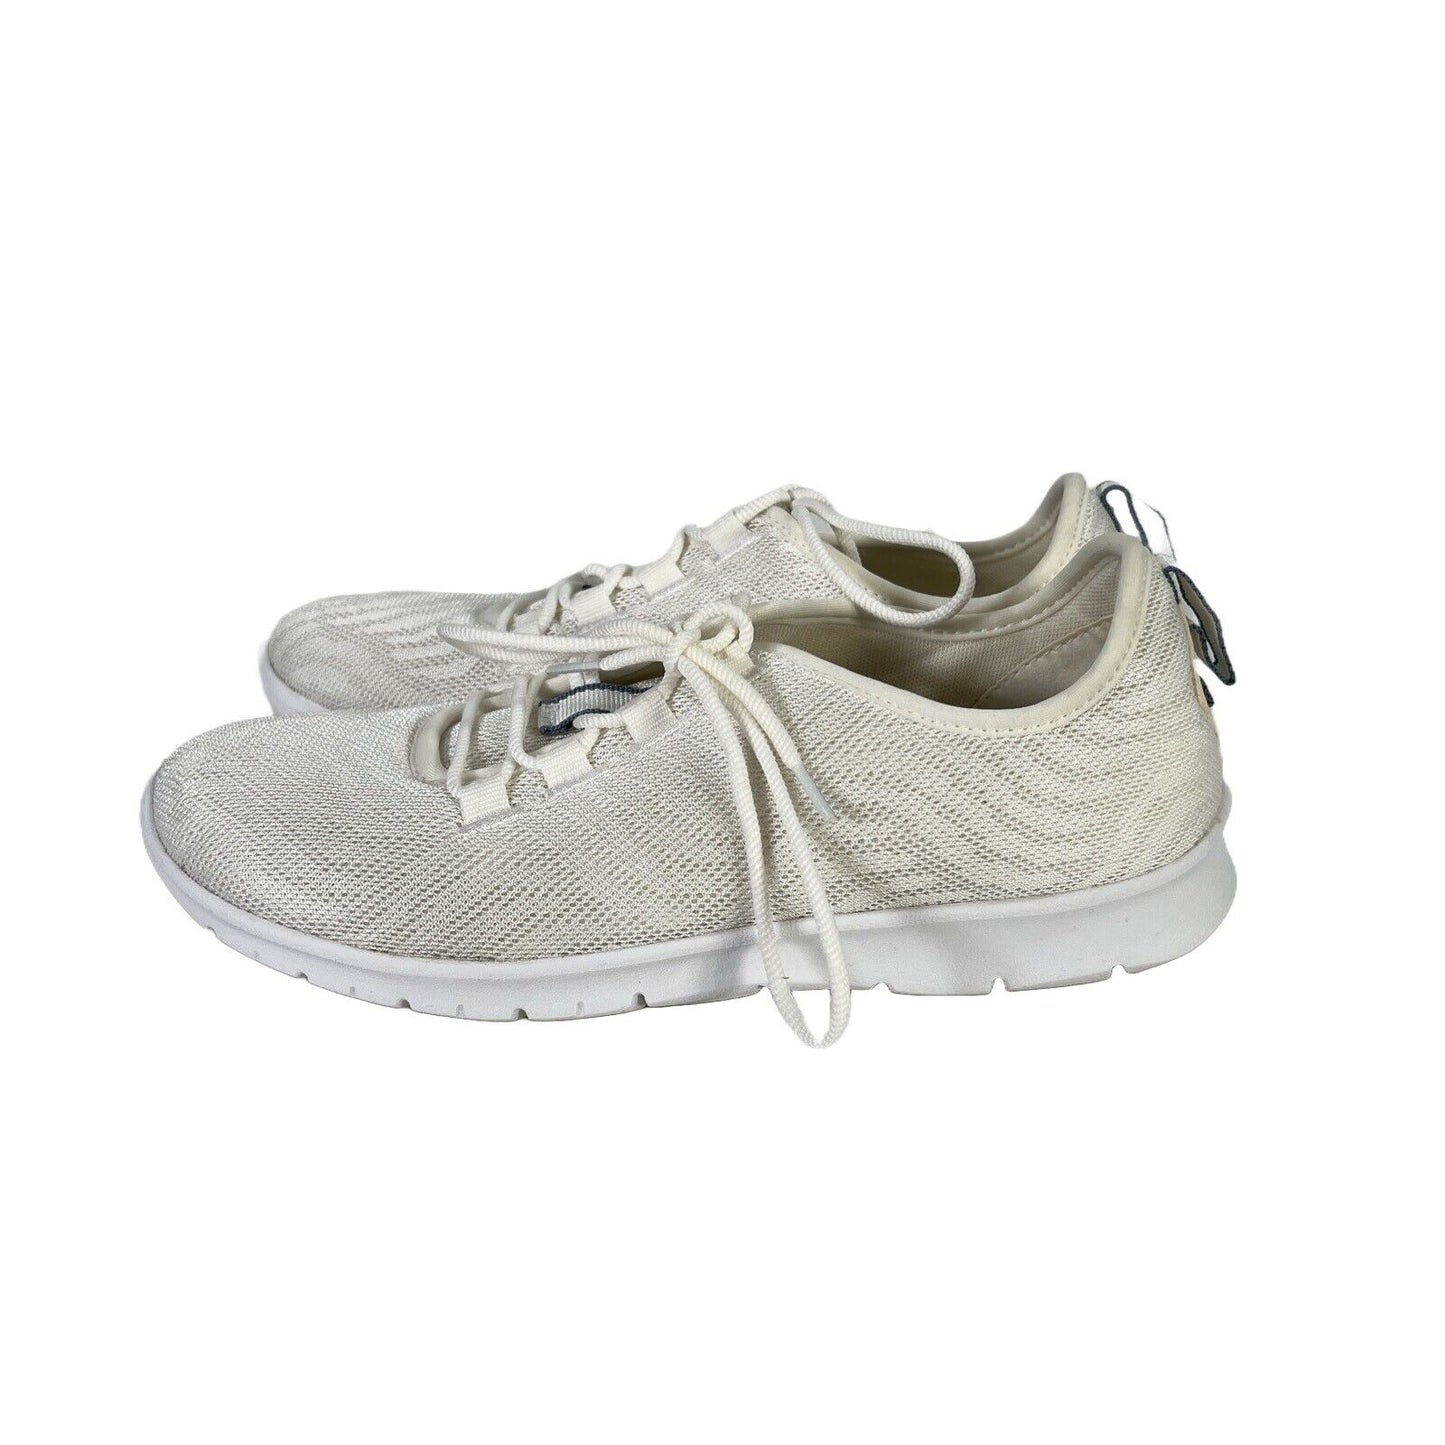 Clarks Cloudsteppers Zapatillas deportivas con cordones para mujer, color blanco, 8